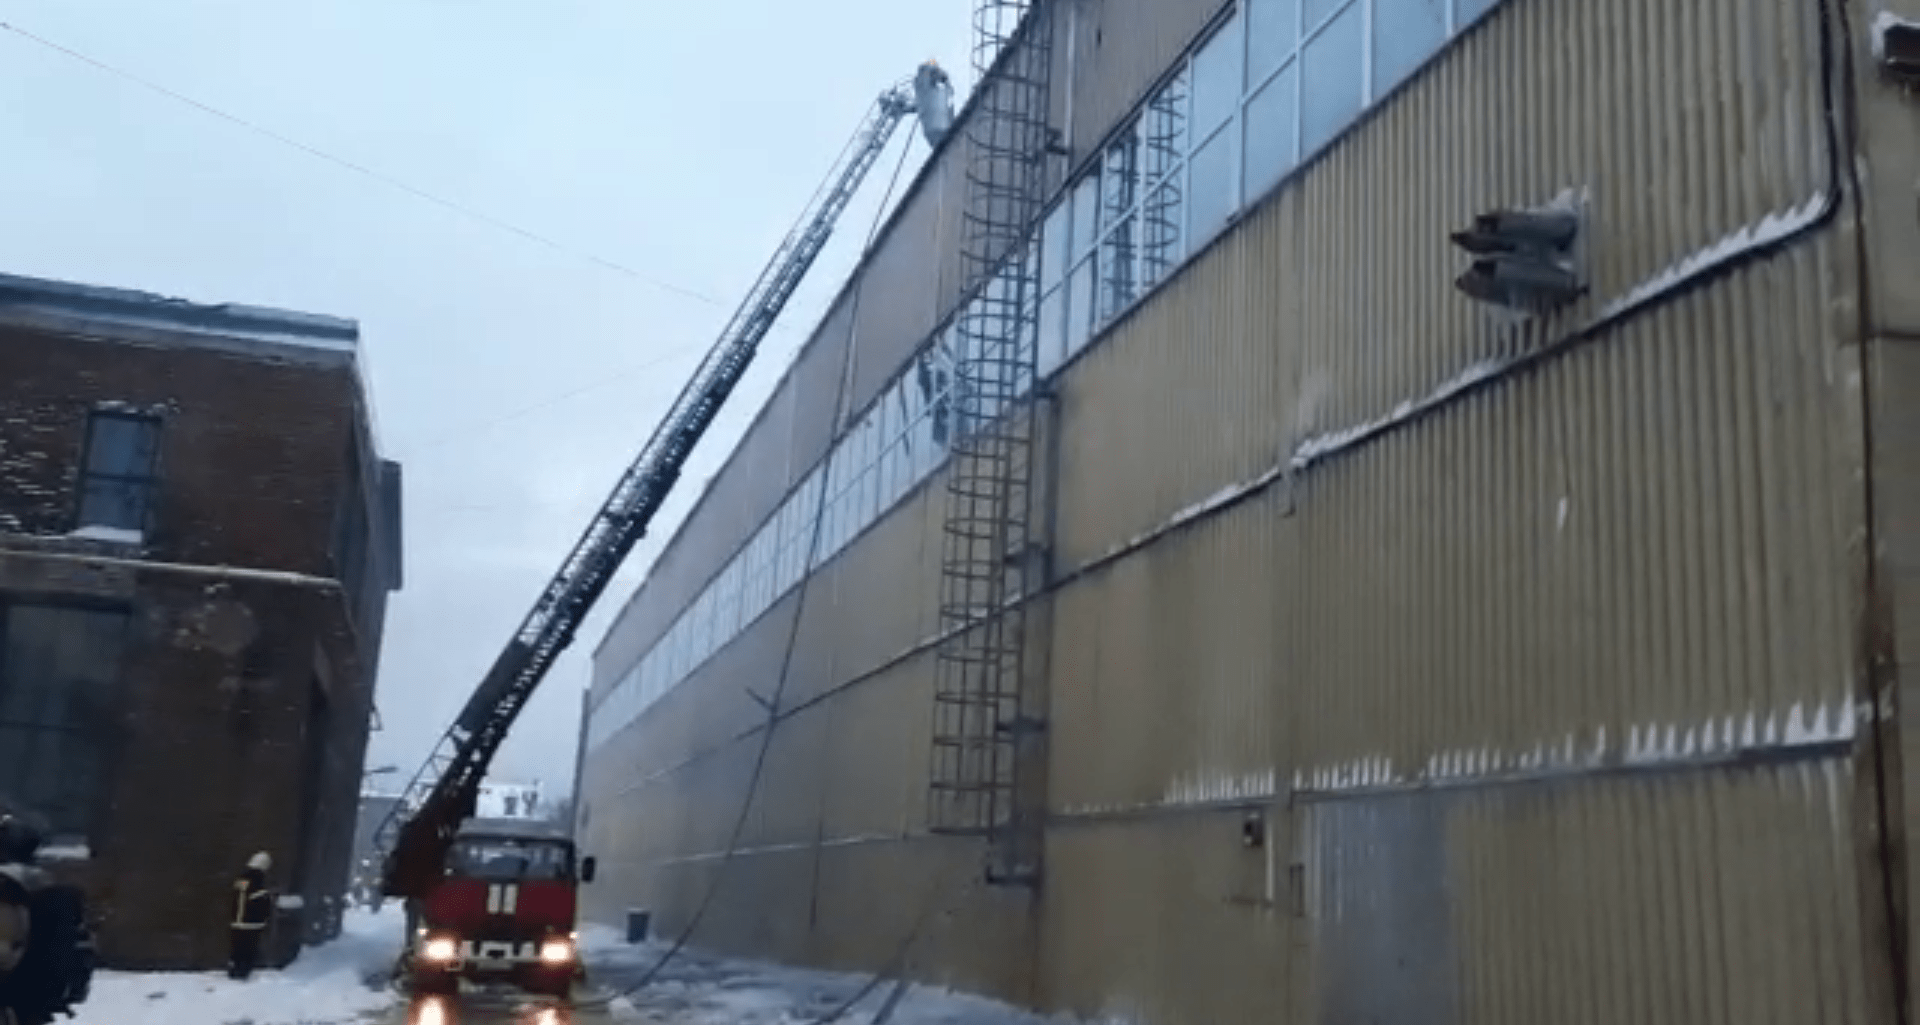 Пожар возле машиностроительного завода «Звезда»в Петербурге локализовали